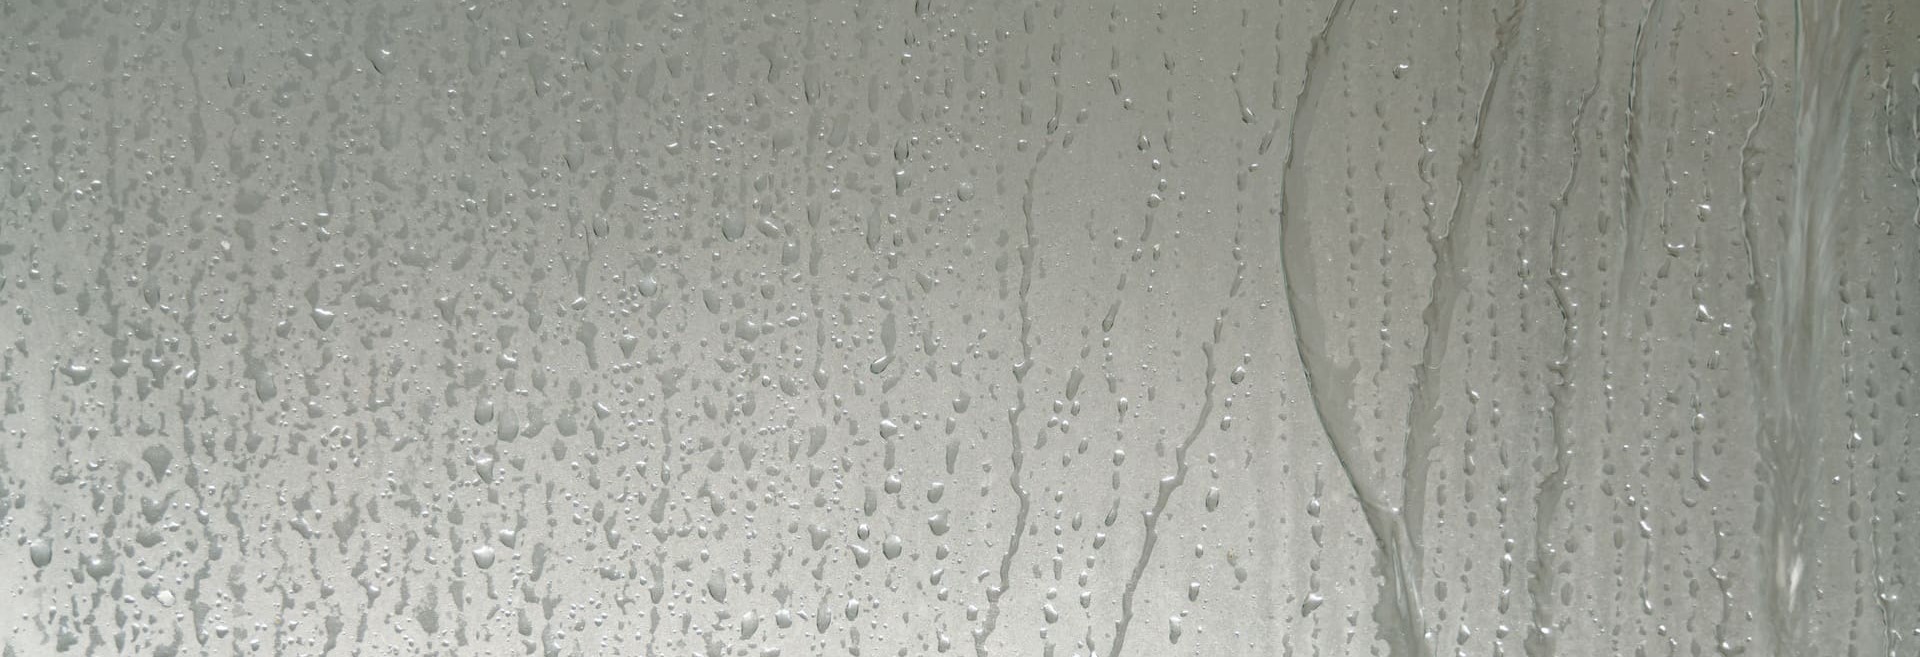 vitre douche avec condensation dessus